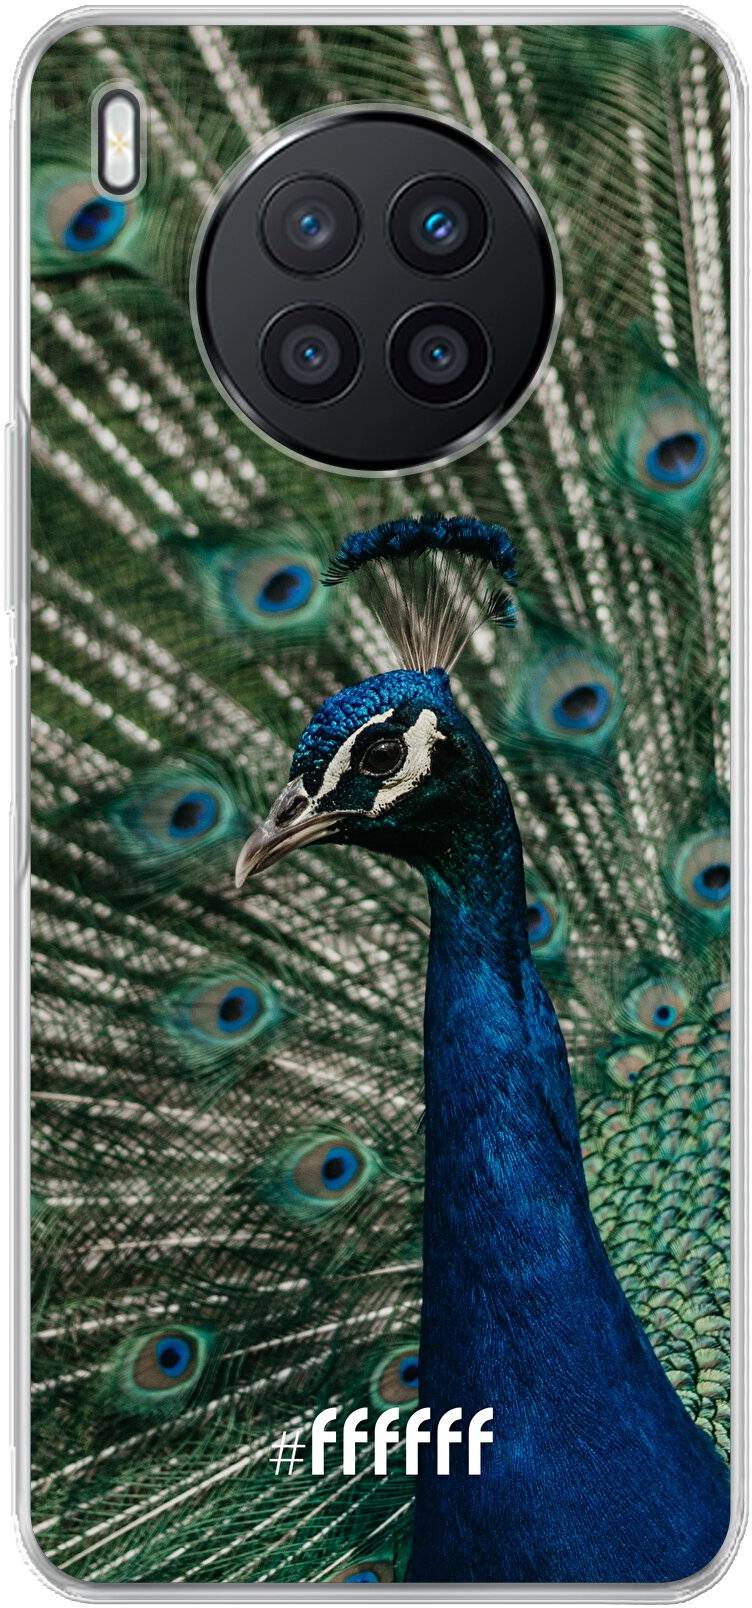 Peacock Nova 8i